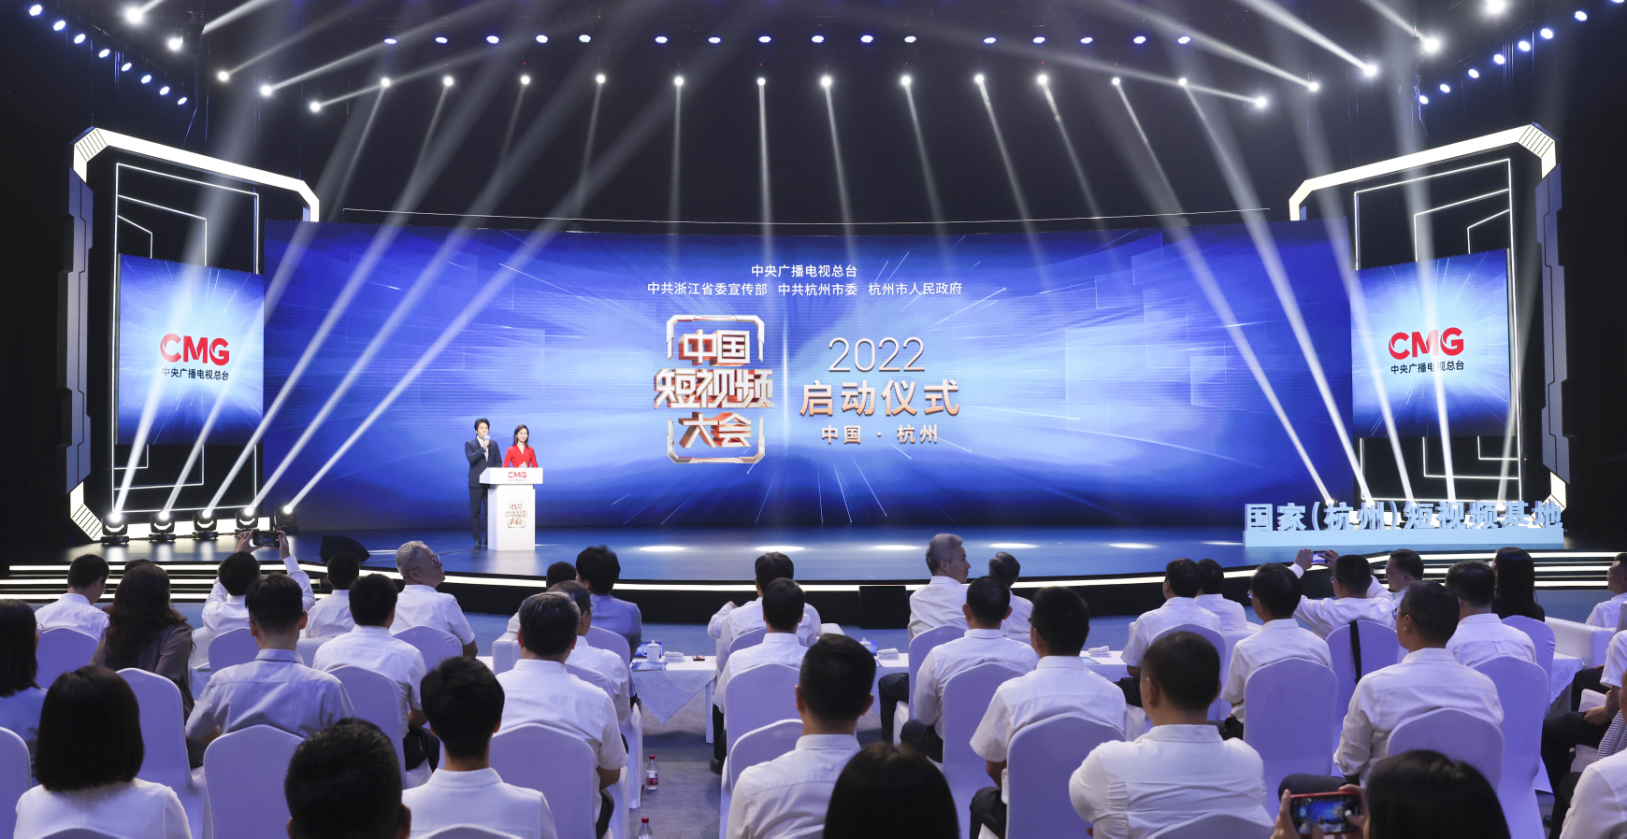 央视总台大型融媒体活动《中国短视频大会》举行项目启动仪式